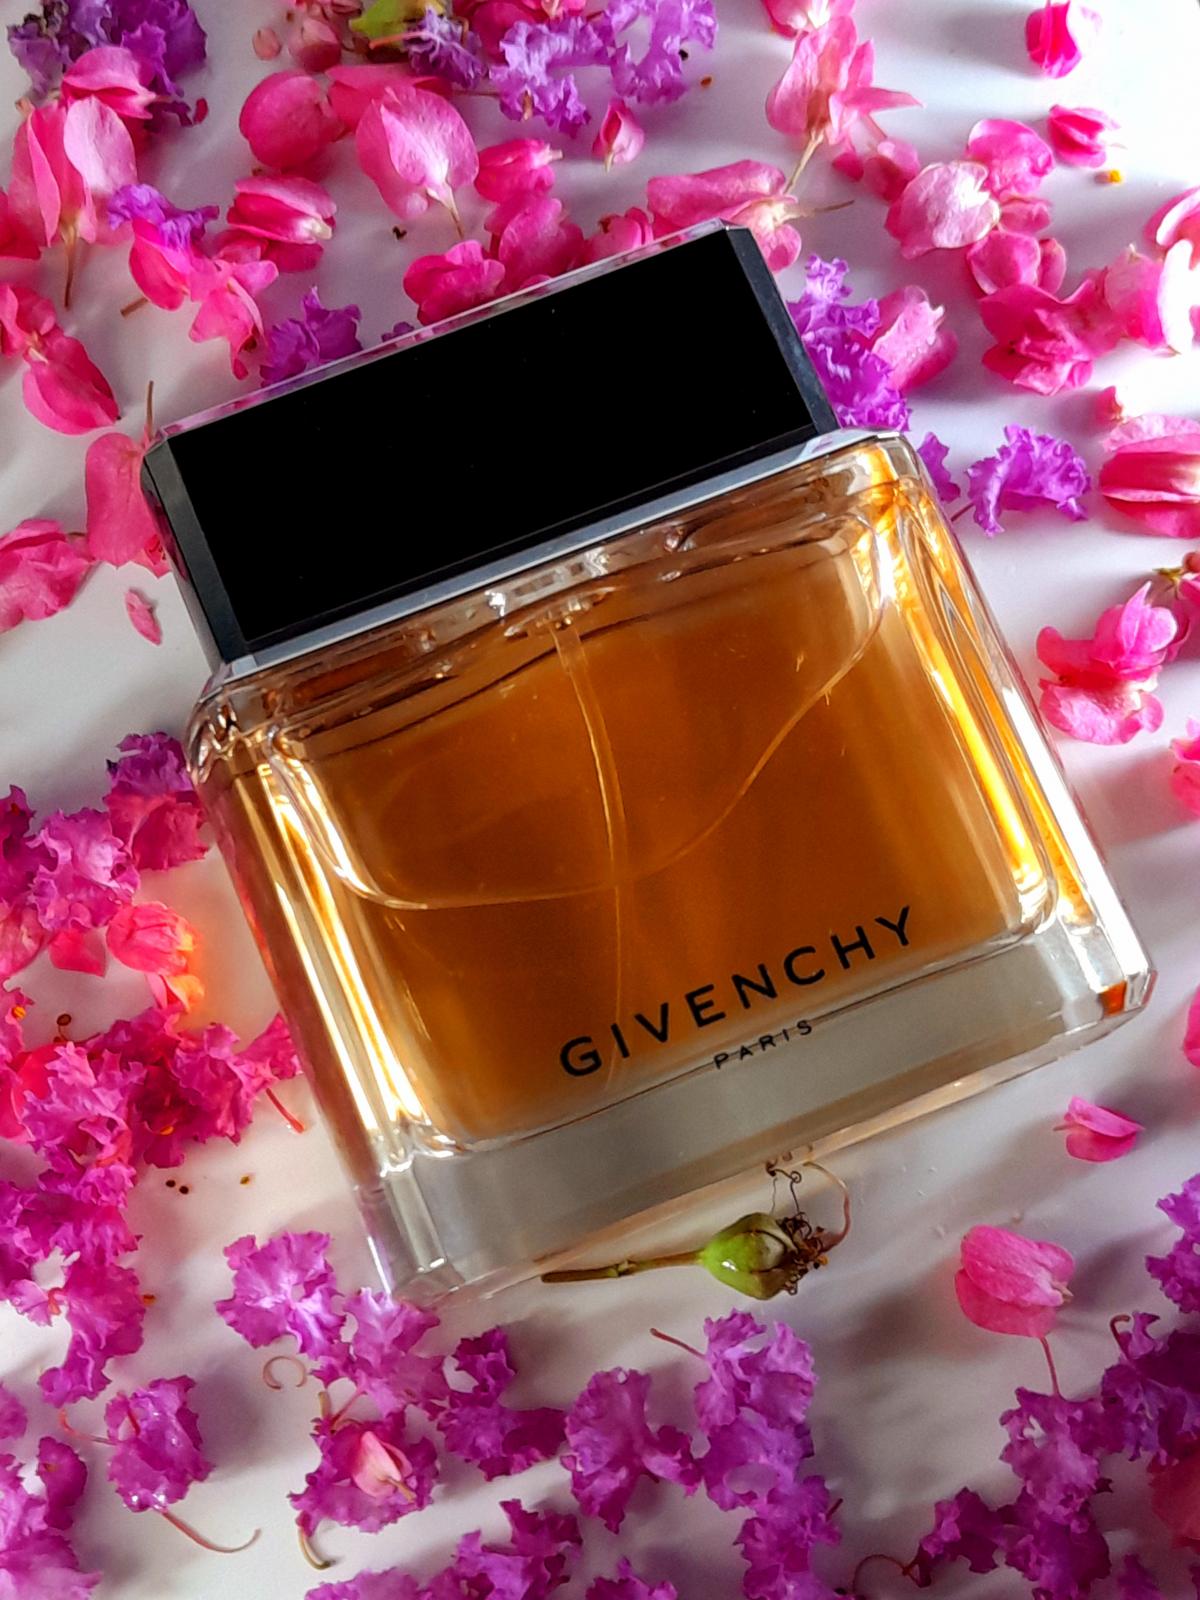 Dahlia Noir Givenchy perfume - a fragrance for women 2011